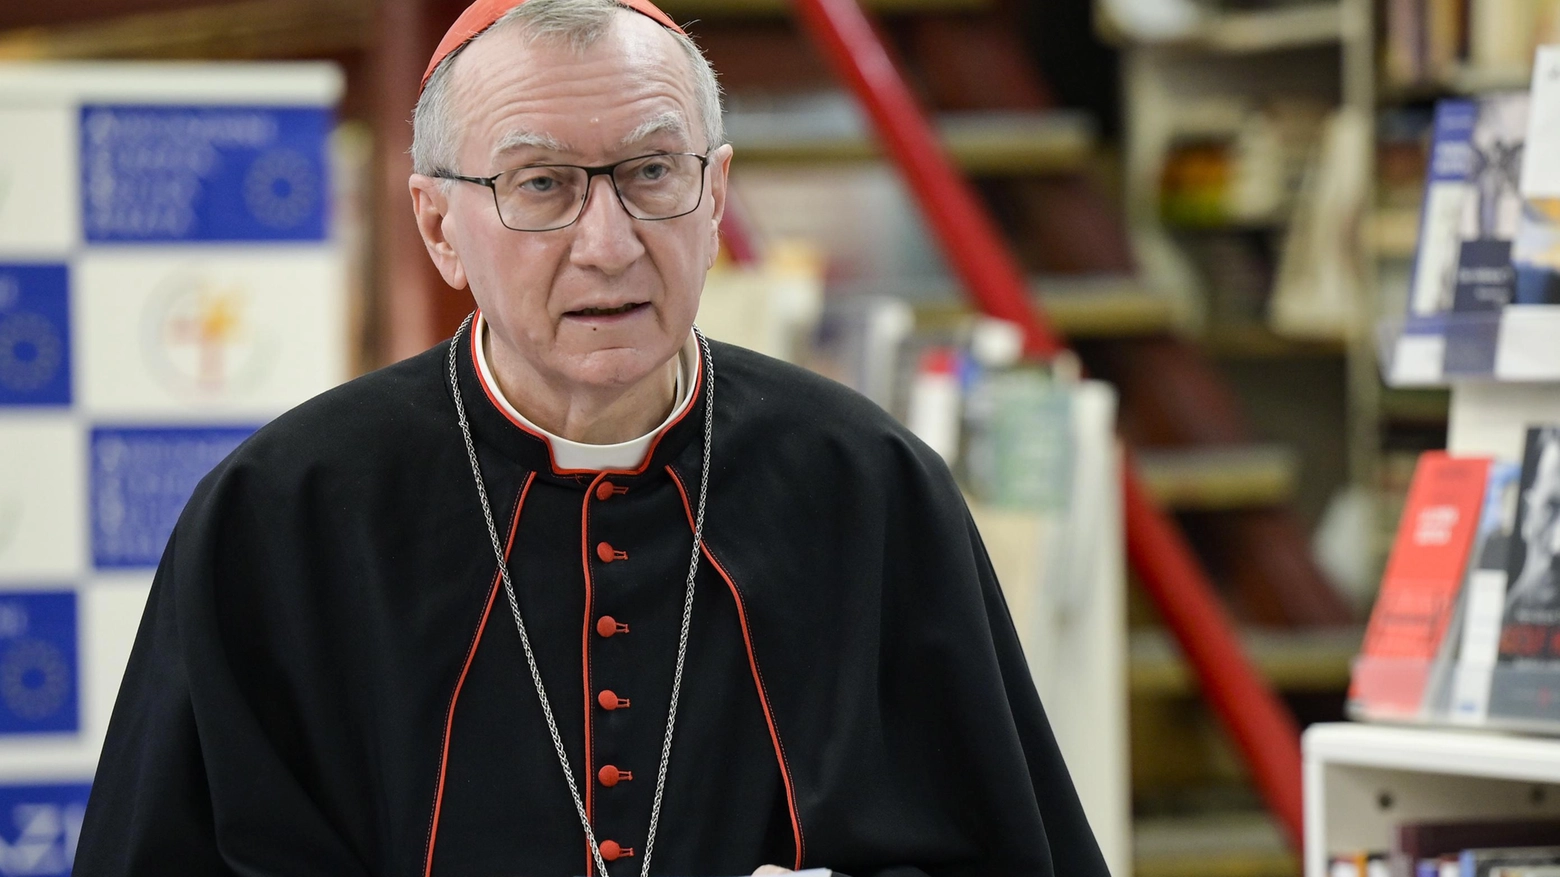 Il segretario di Stato vaticano, Pietro Parolin: vicentino, il cardinale ha 66 anni